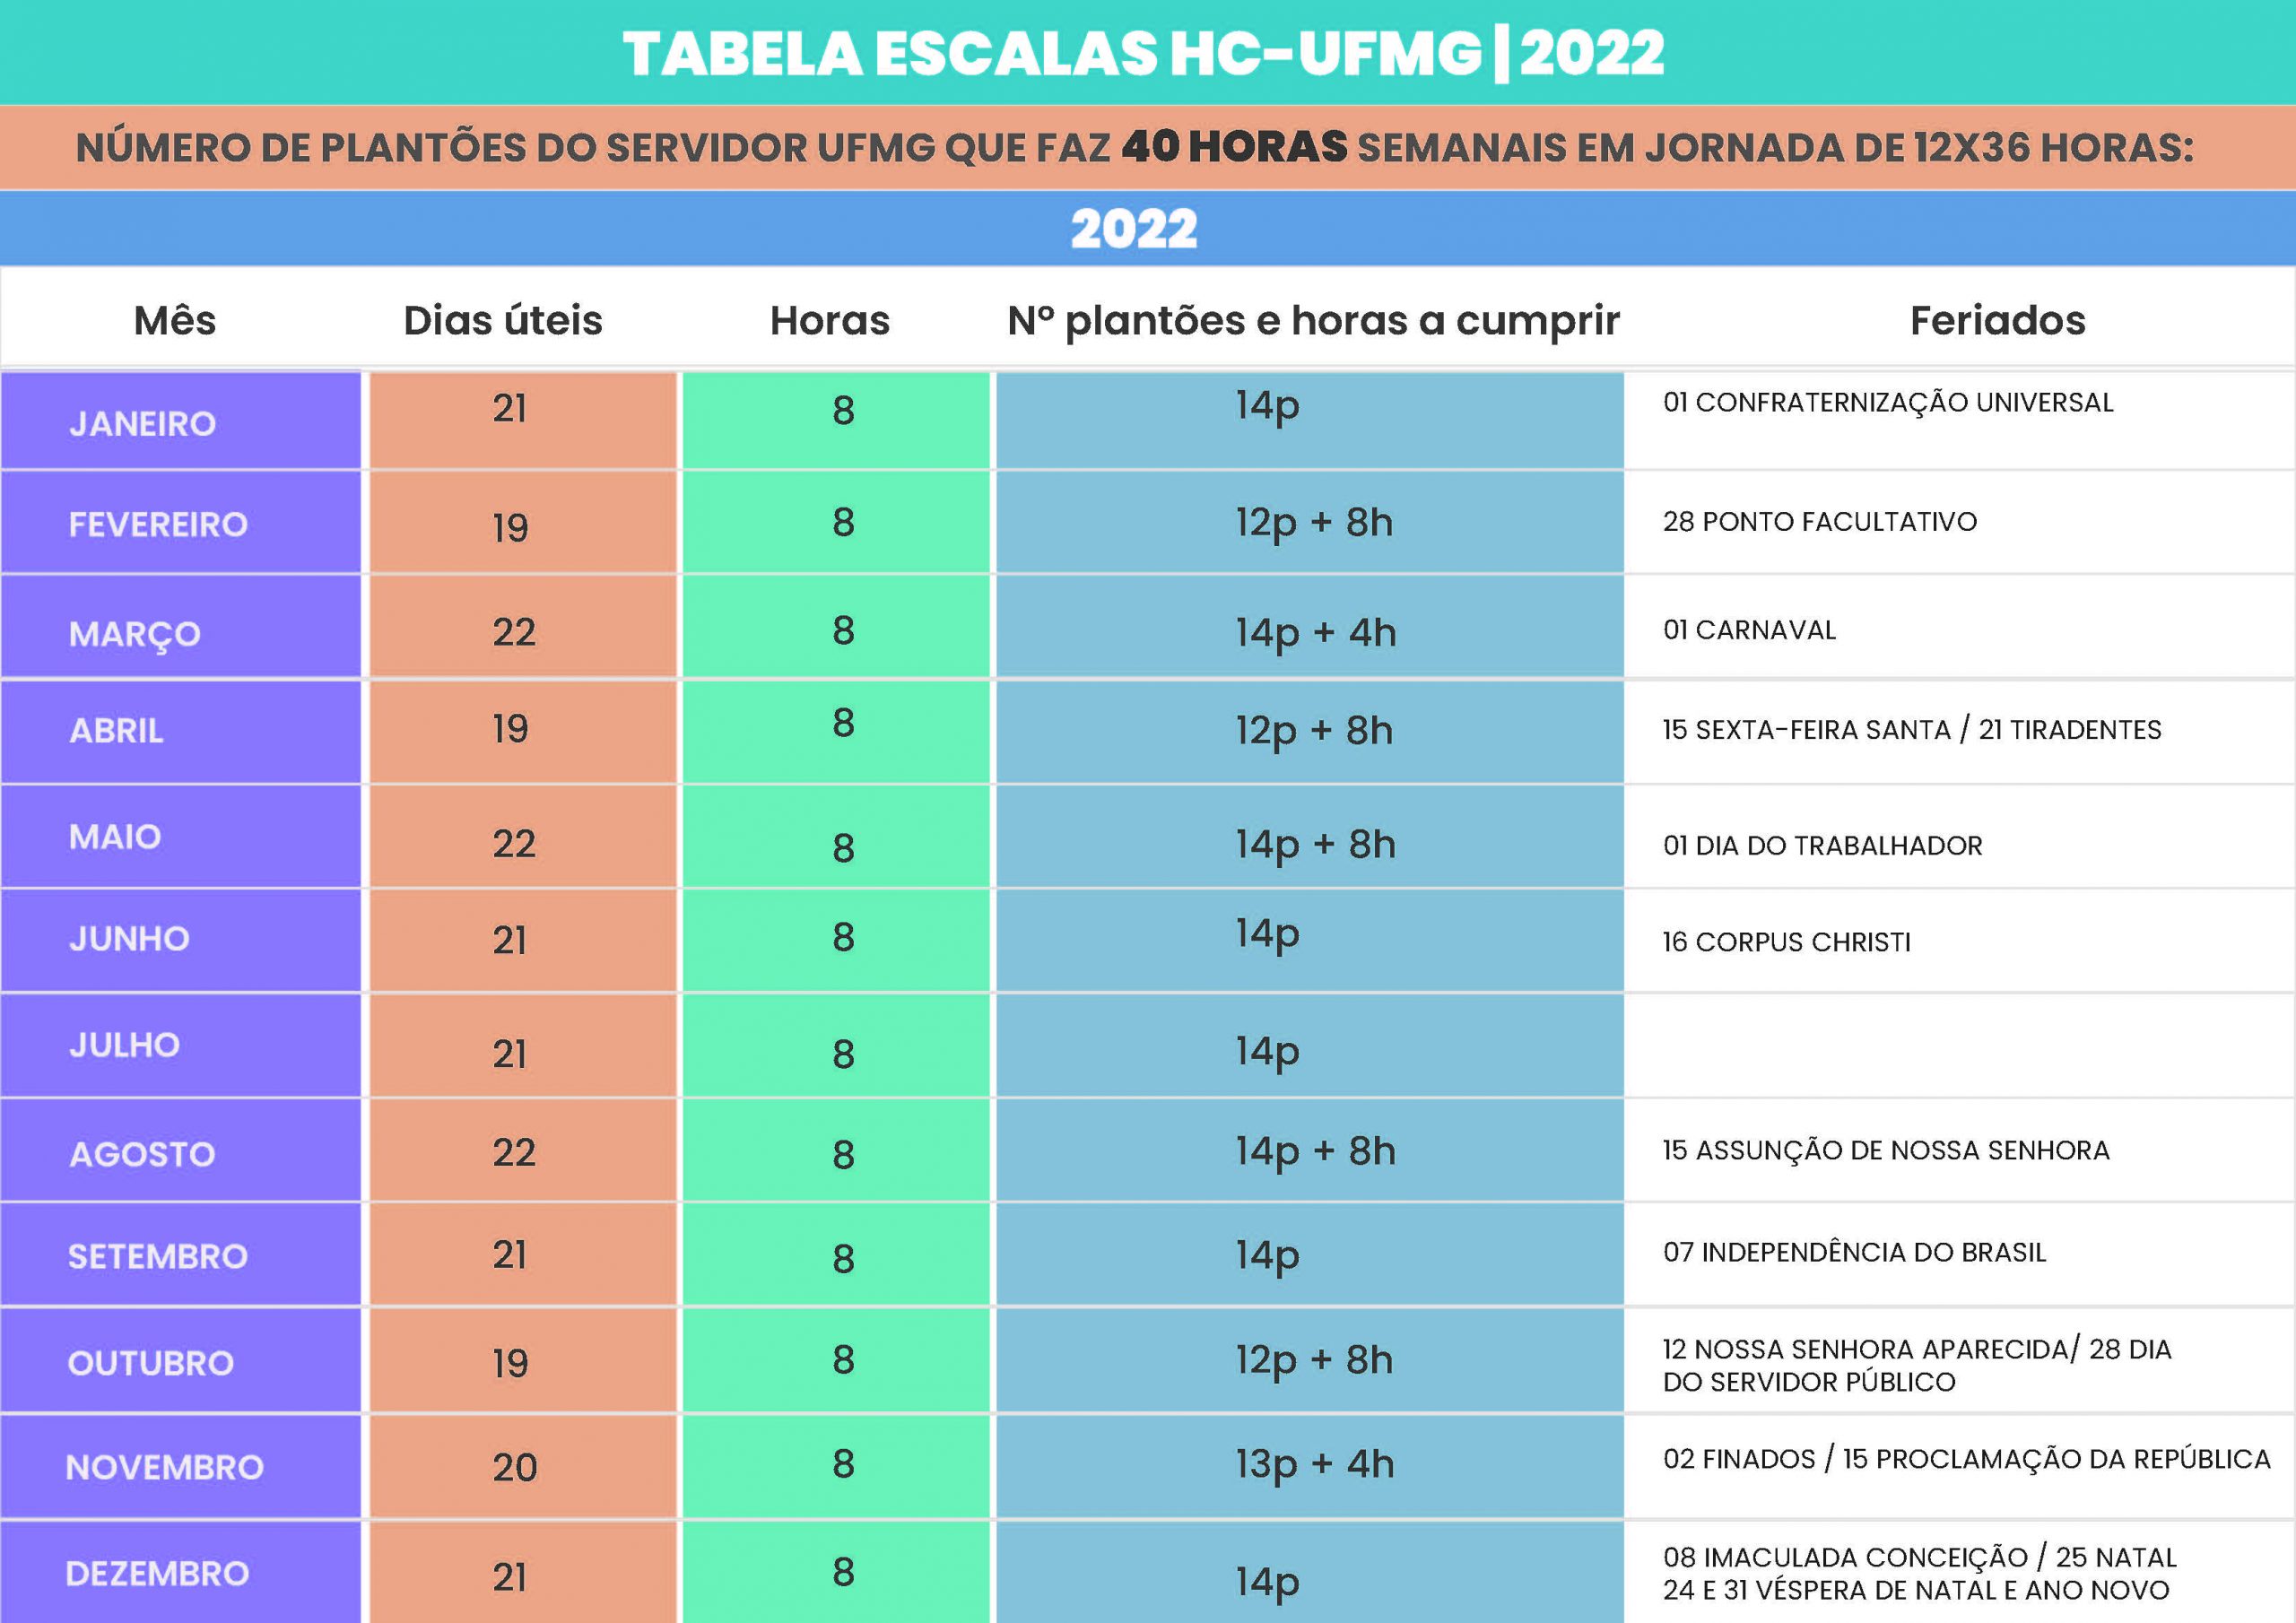 Tabela de Escalas do HC-UFMG (30h e 40h) - 2022 6